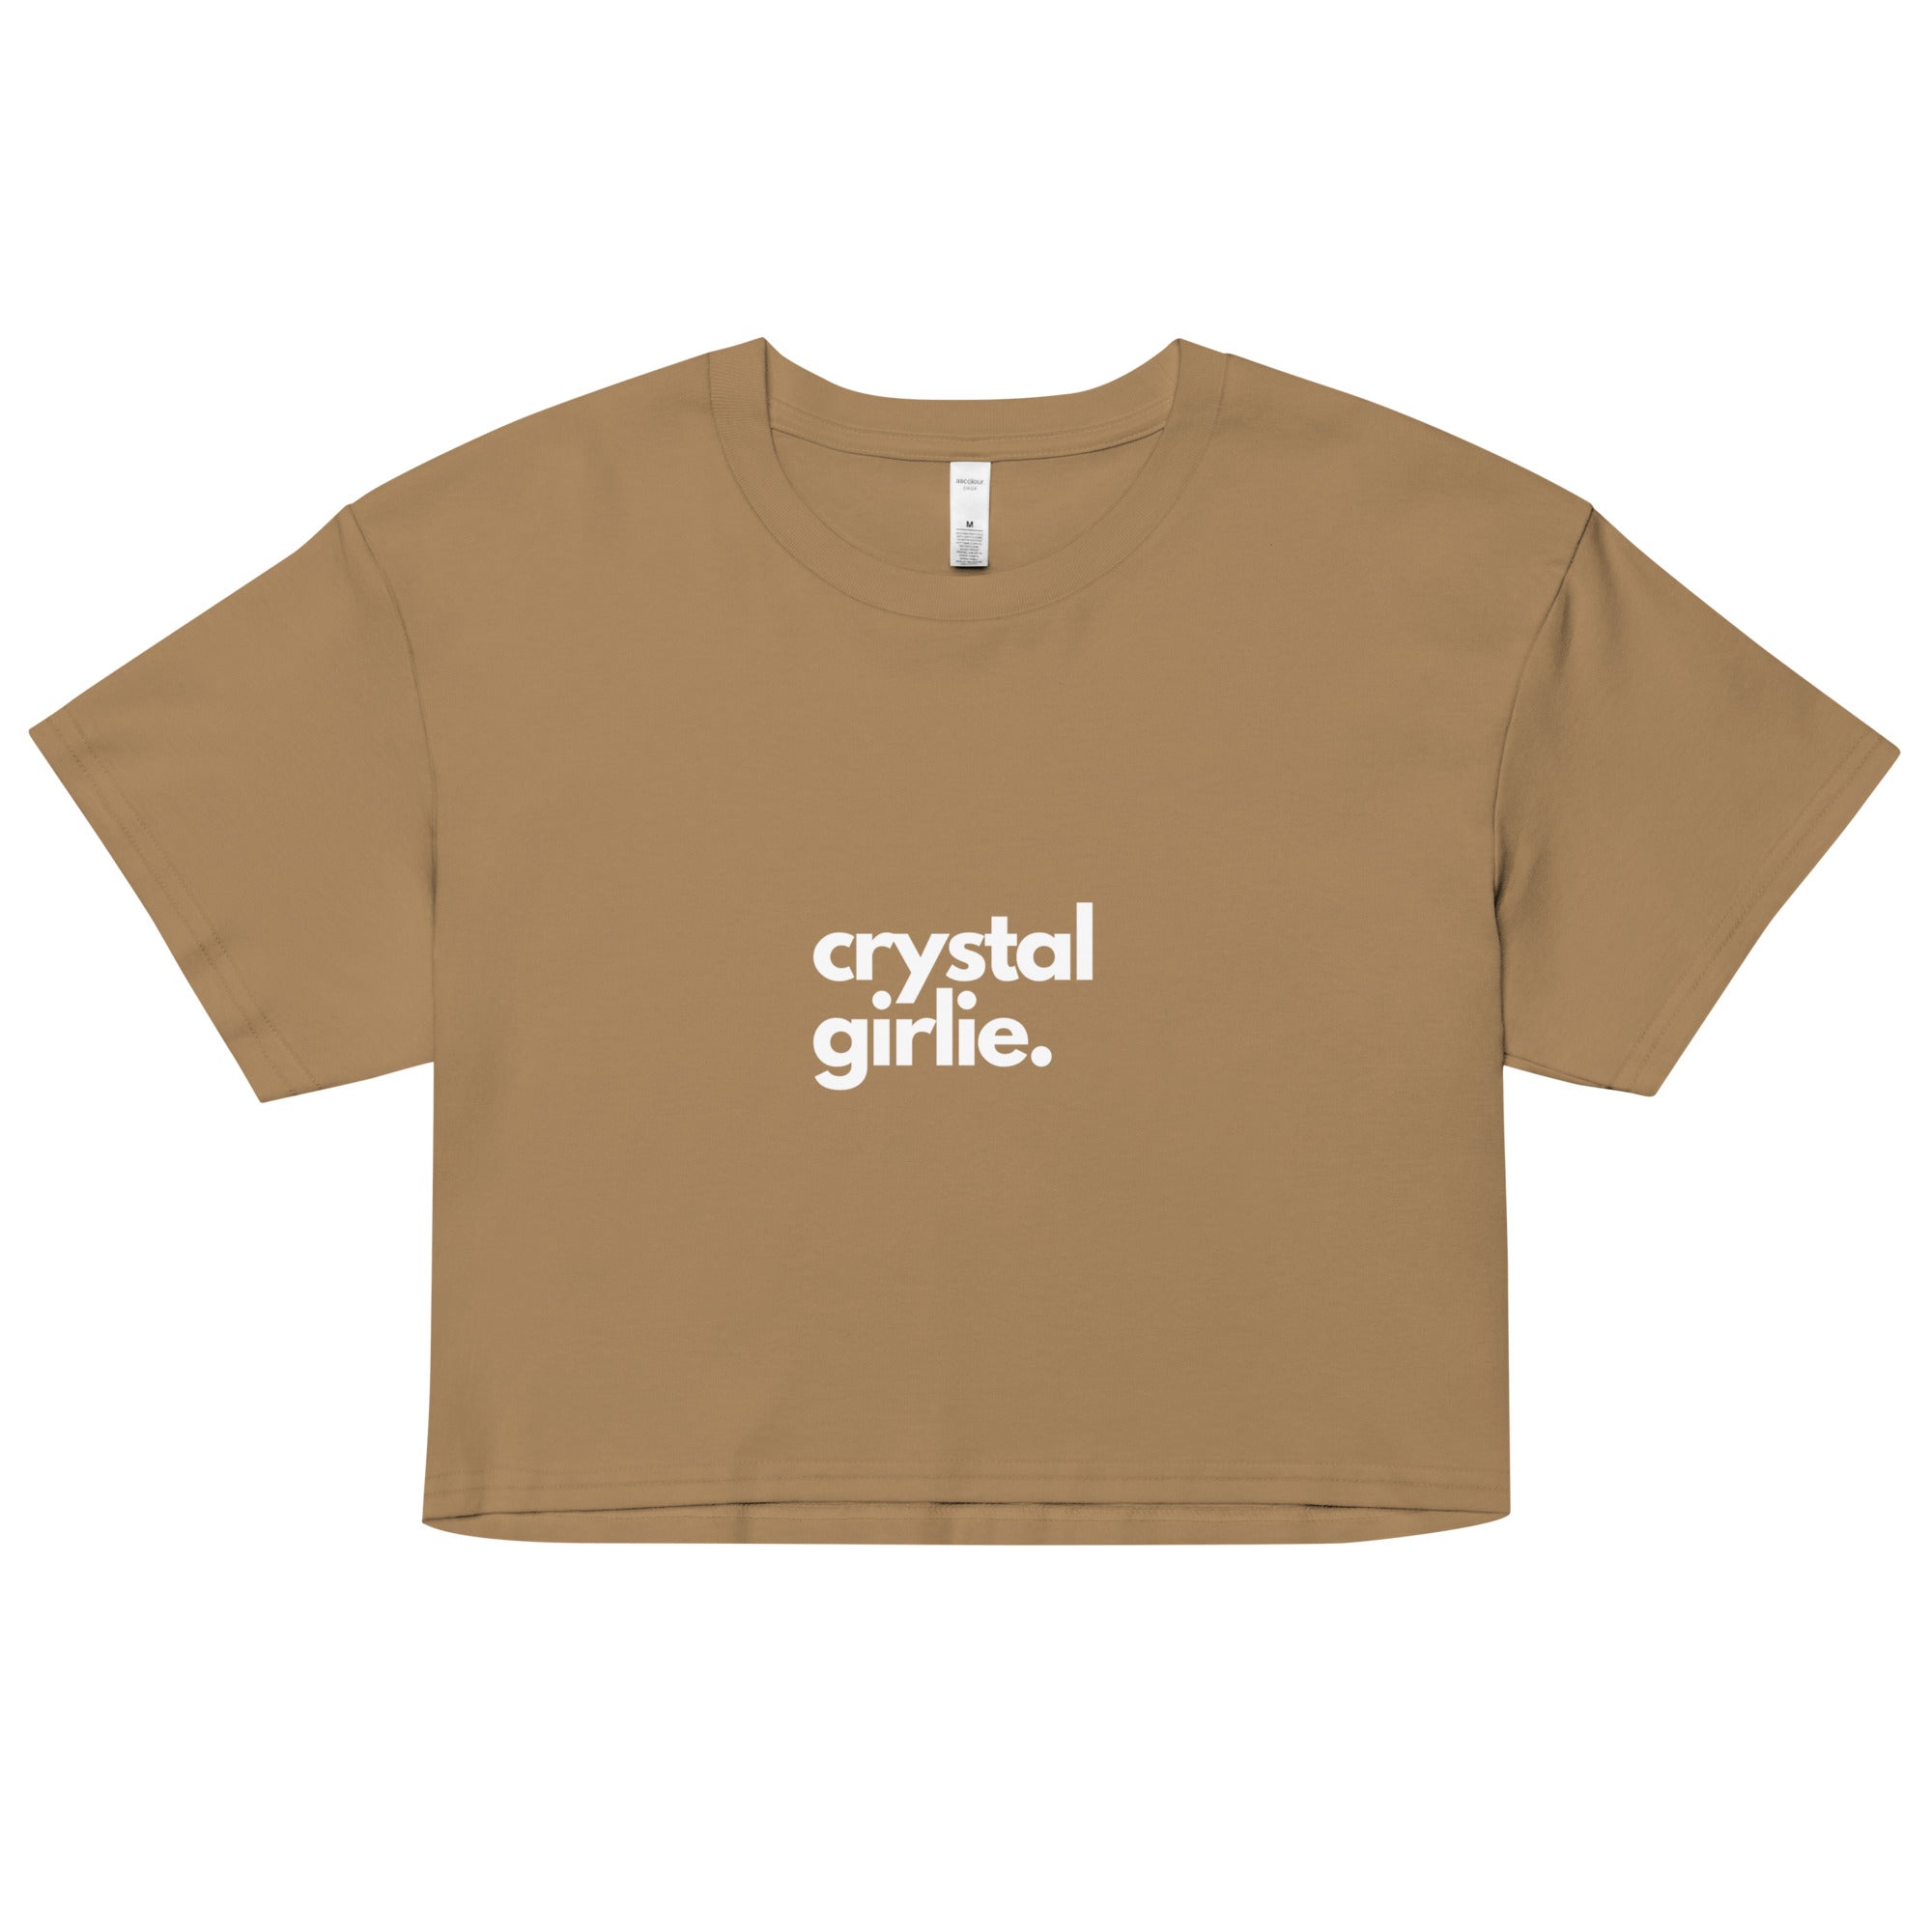 Crystal Girlie Crop Top (White Print)